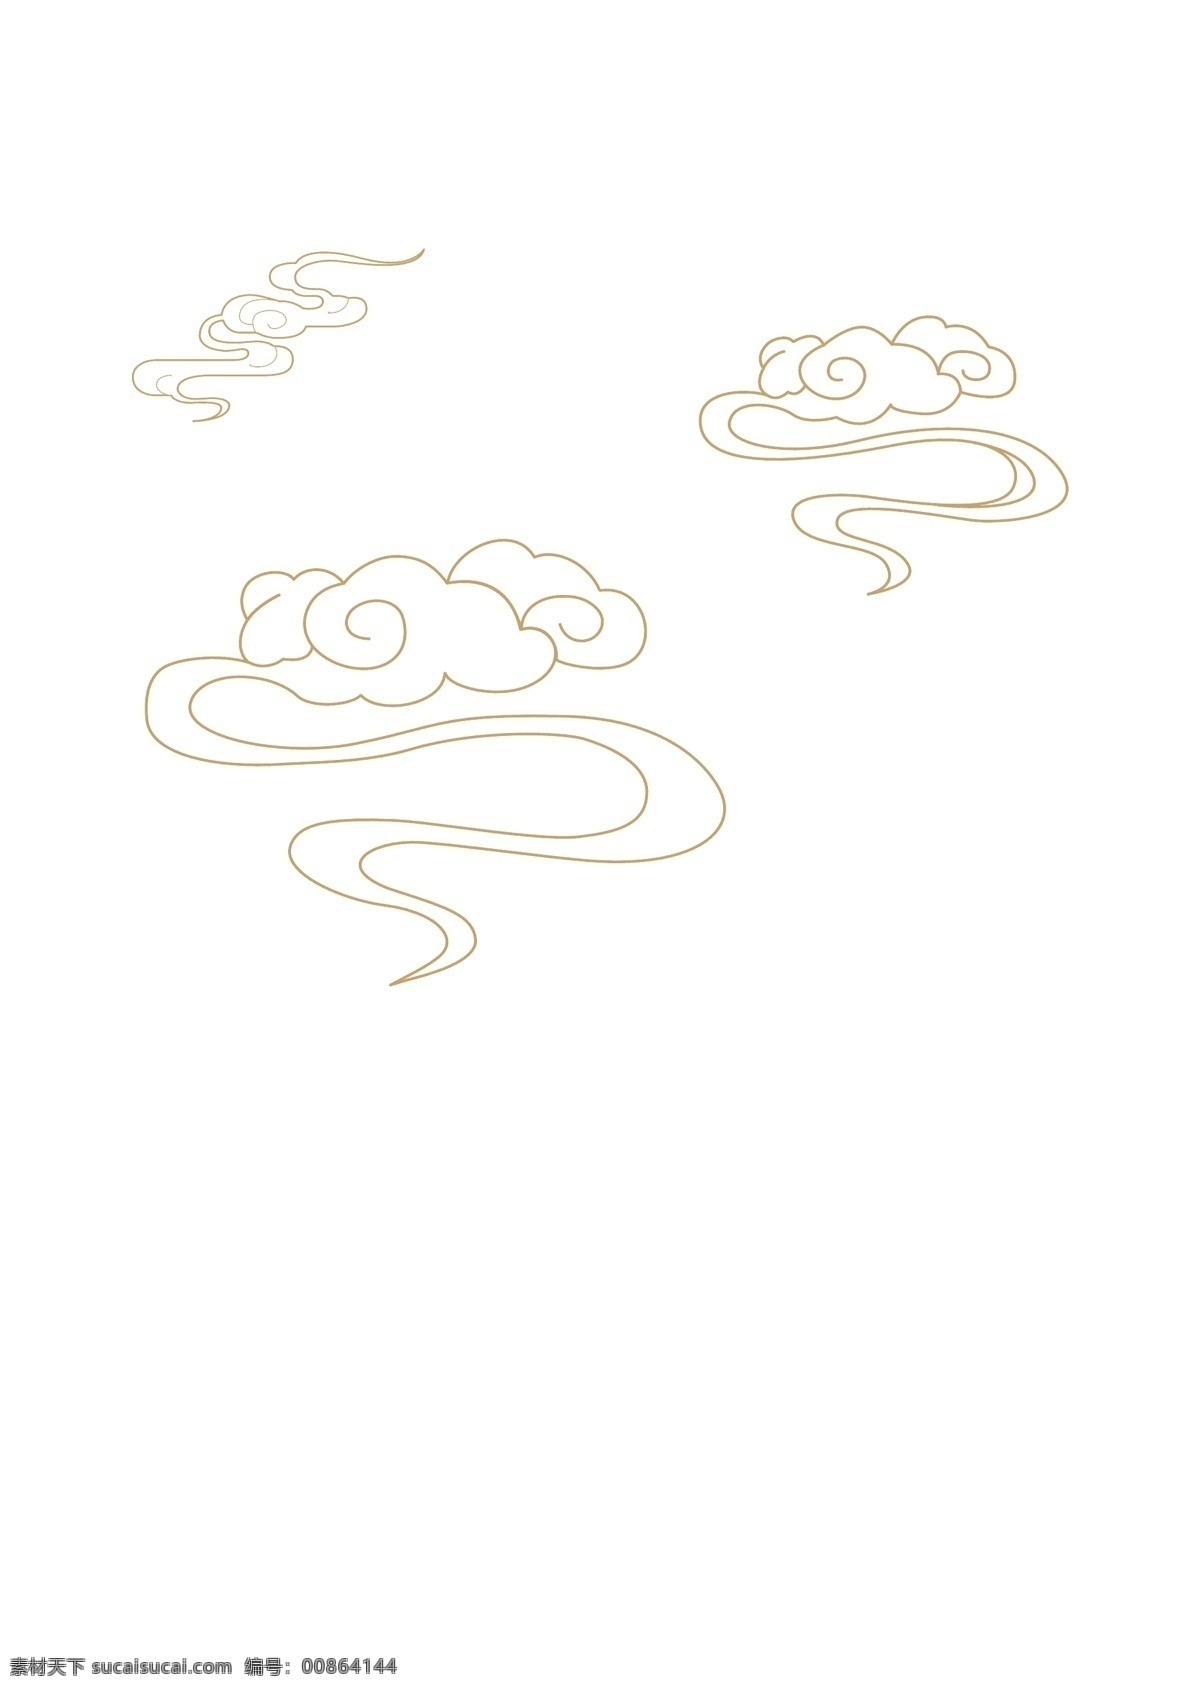 手绘 祥云 分层 中国风 可编辑 云 矢量 底纹边框 其他素材